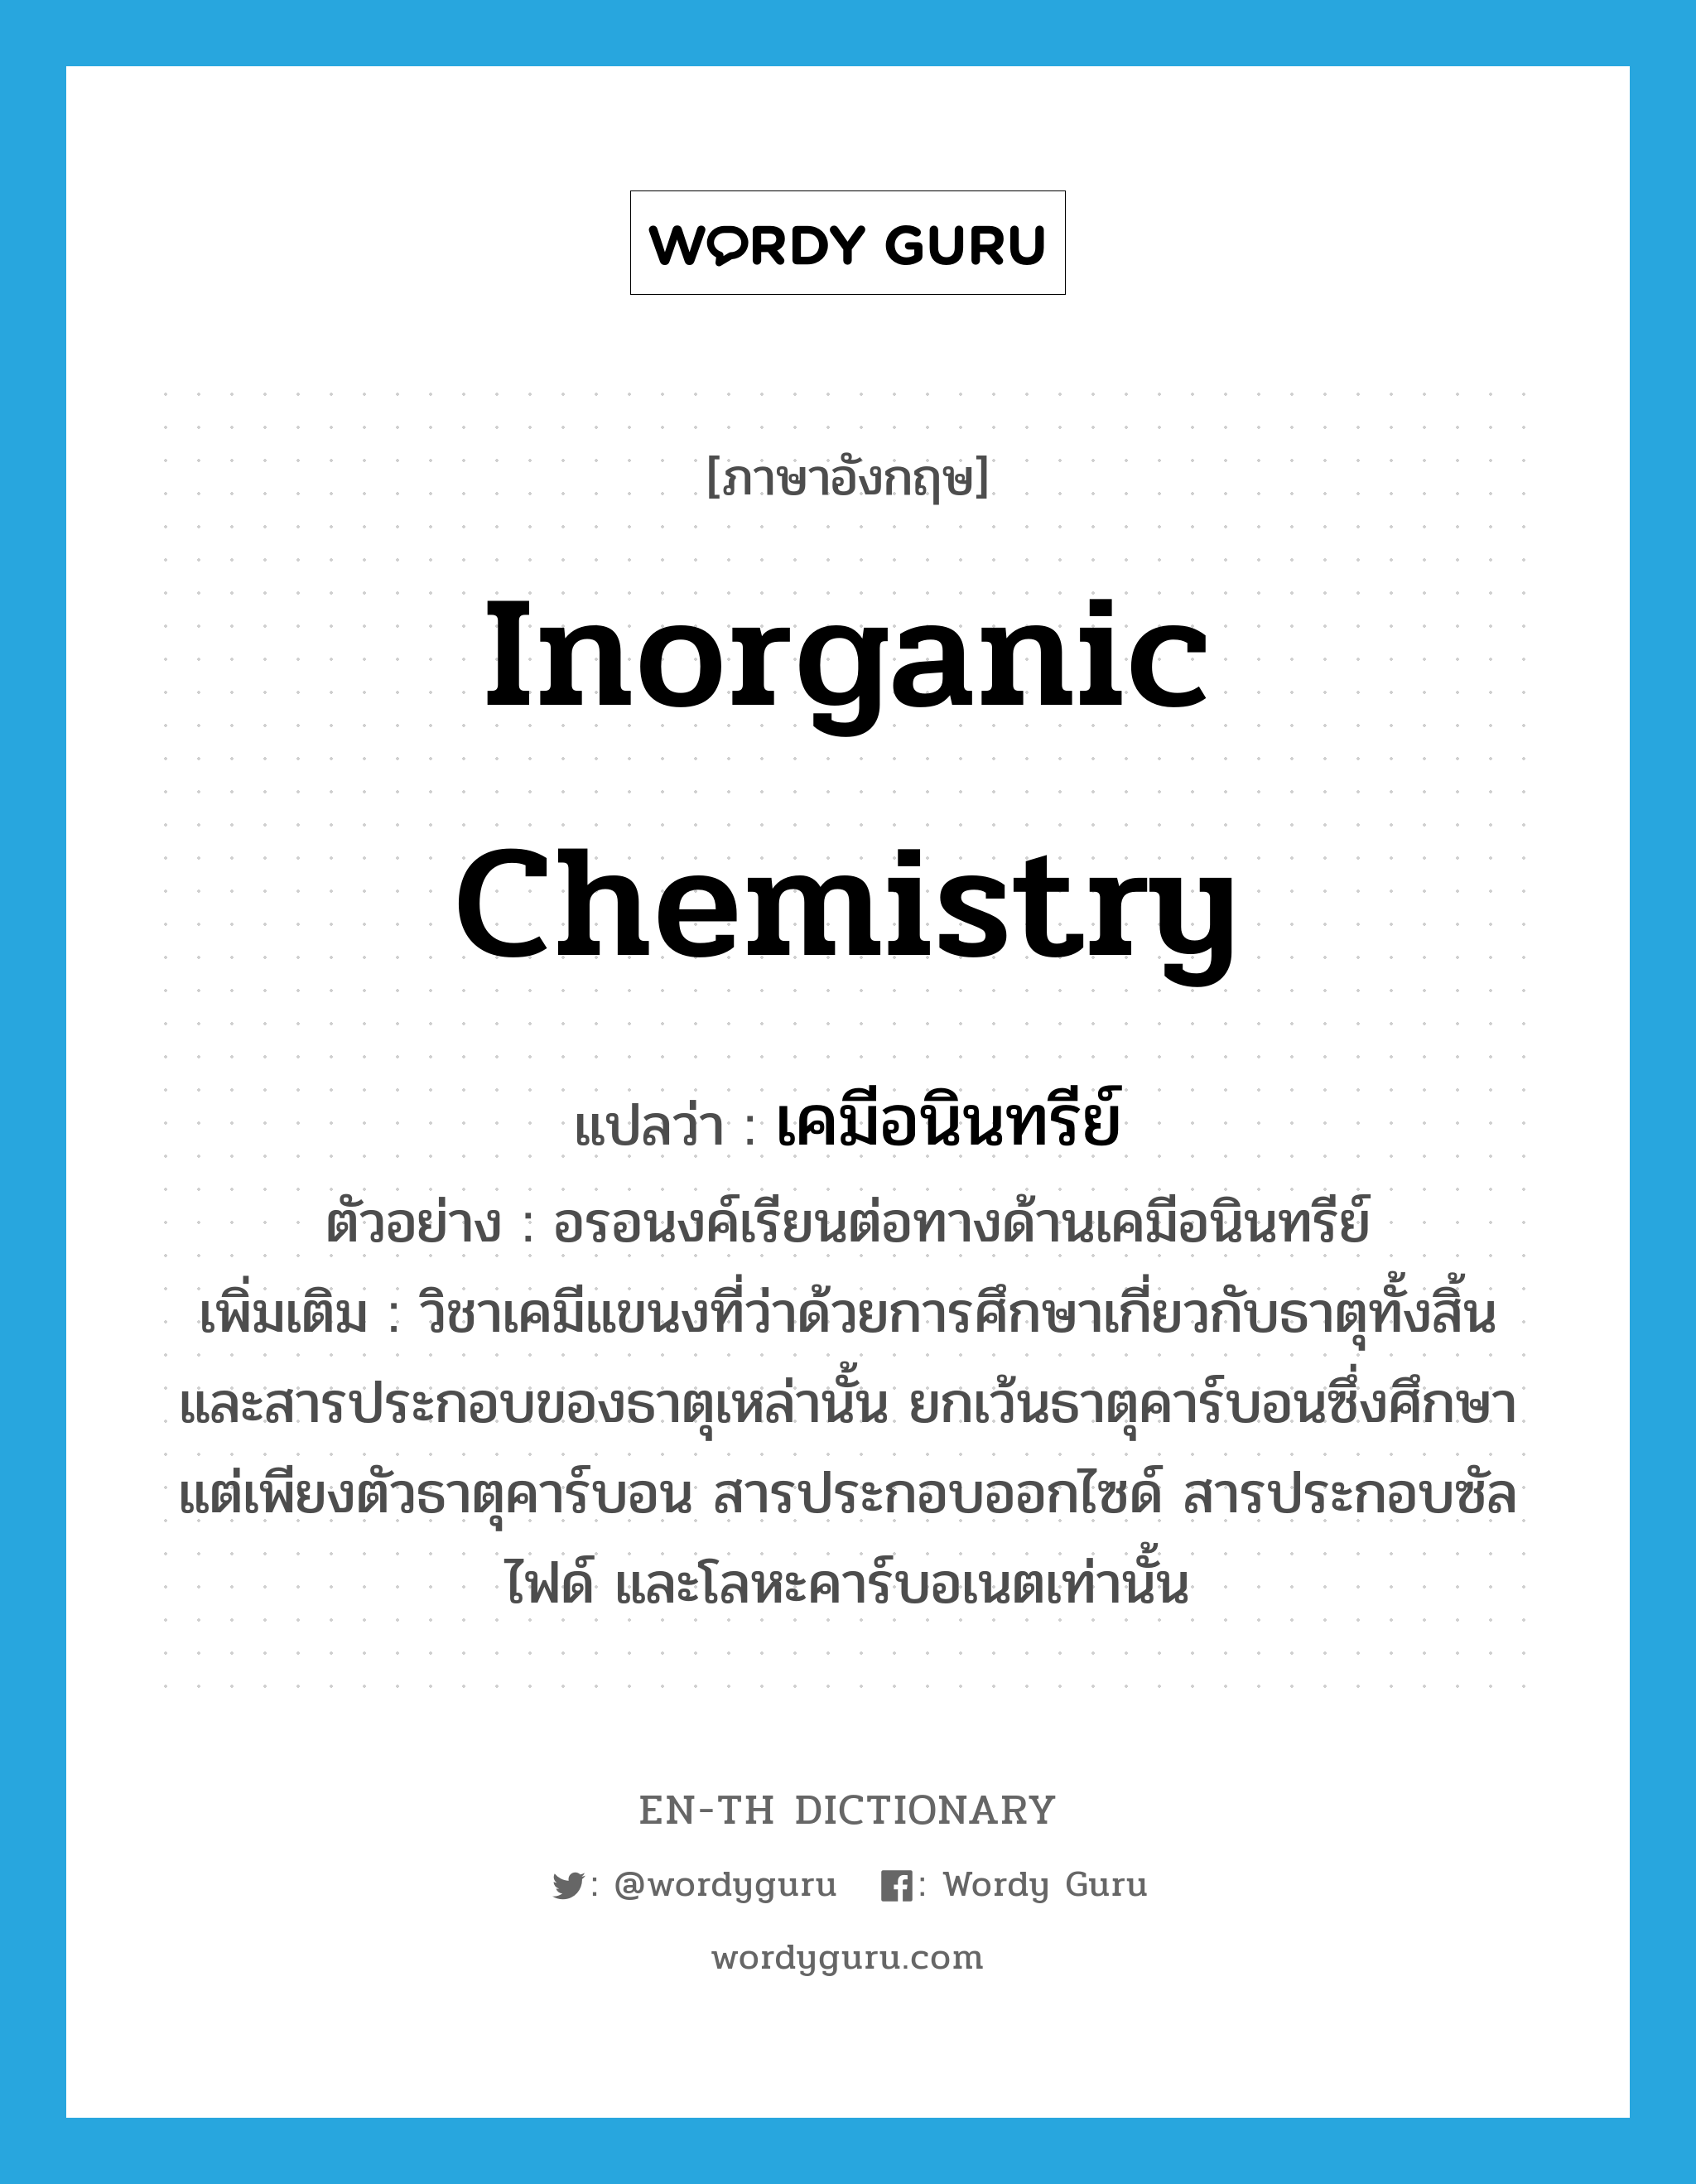 เคมีอนินทรีย์ ภาษาอังกฤษ?, คำศัพท์ภาษาอังกฤษ เคมีอนินทรีย์ แปลว่า inorganic chemistry ประเภท N ตัวอย่าง อรอนงค์เรียนต่อทางด้านเคมีอนินทรีย์ เพิ่มเติม วิชาเคมีแขนงที่ว่าด้วยการศึกษาเกี่ยวกับธาตุทั้งสิ้น และสารประกอบของธาตุเหล่านั้น ยกเว้นธาตุคาร์บอนซึ่งศึกษาแต่เพียงตัวธาตุคาร์บอน สารประกอบออกไซด์ สารประกอบซัลไฟด์ และโลหะคาร์บอเนตเท่านั้น หมวด N